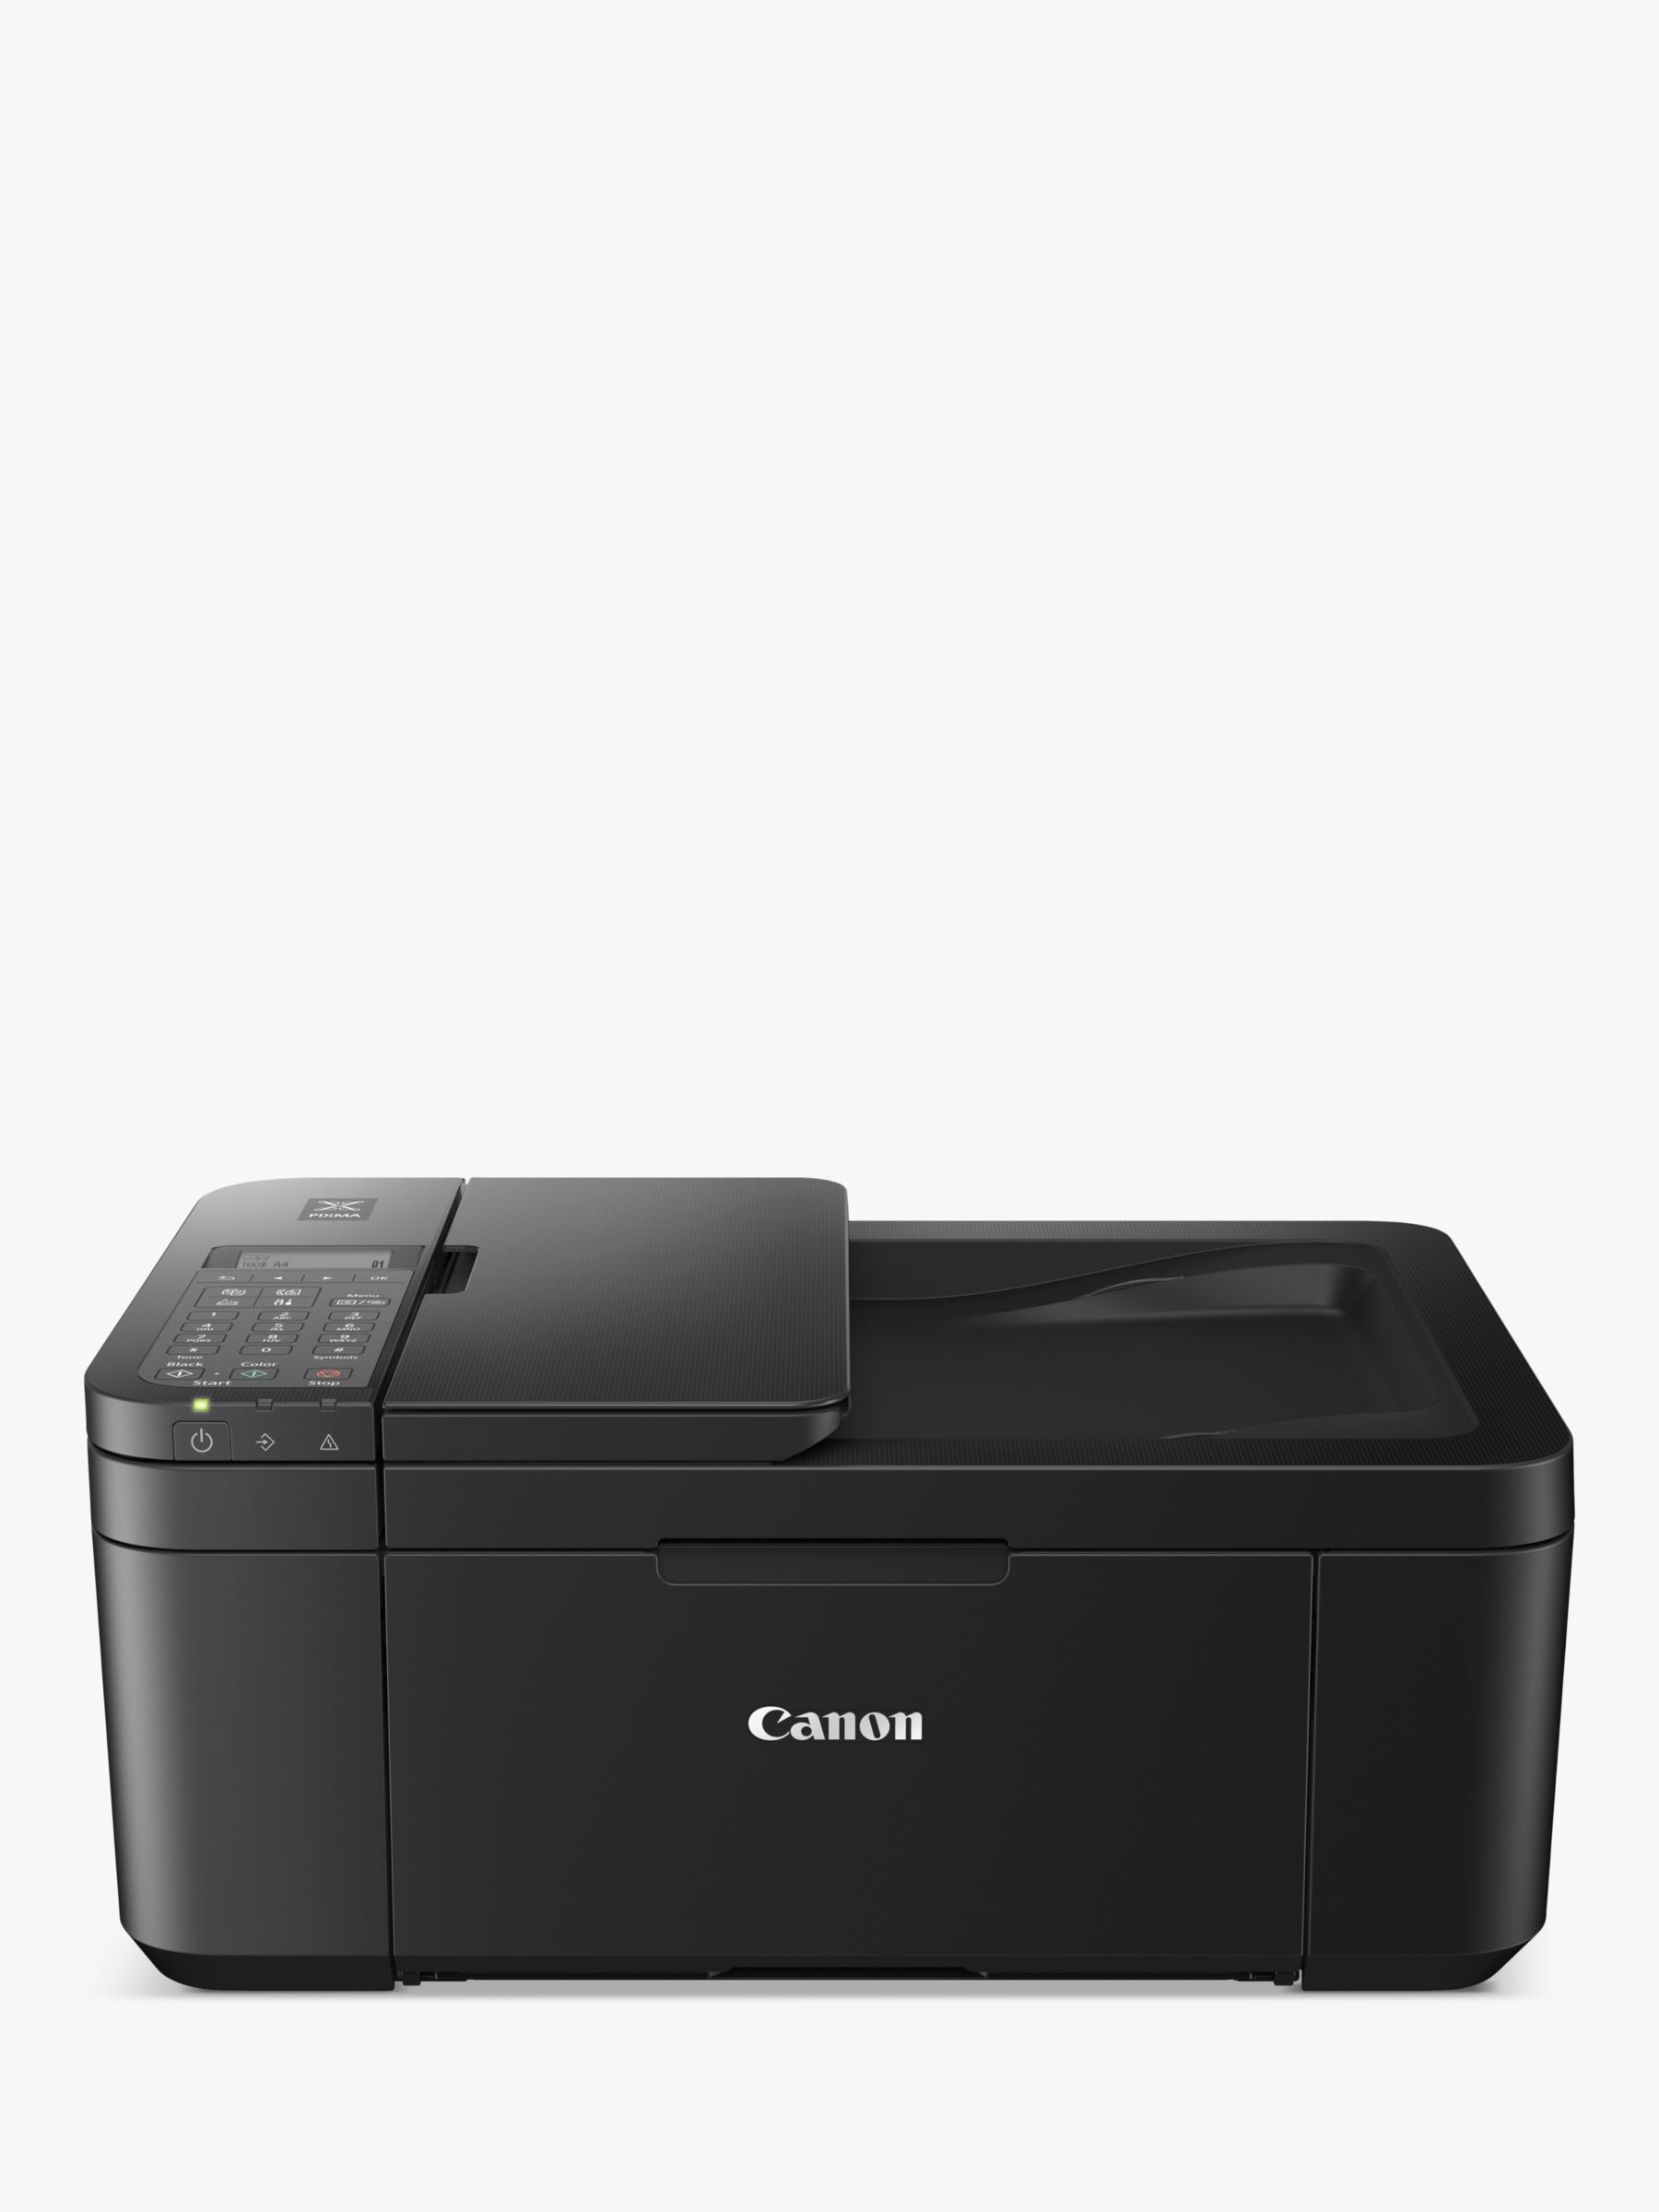 Wi-Fi Wireless TR4750i Canon PIXMA Black Printer, All-in-One